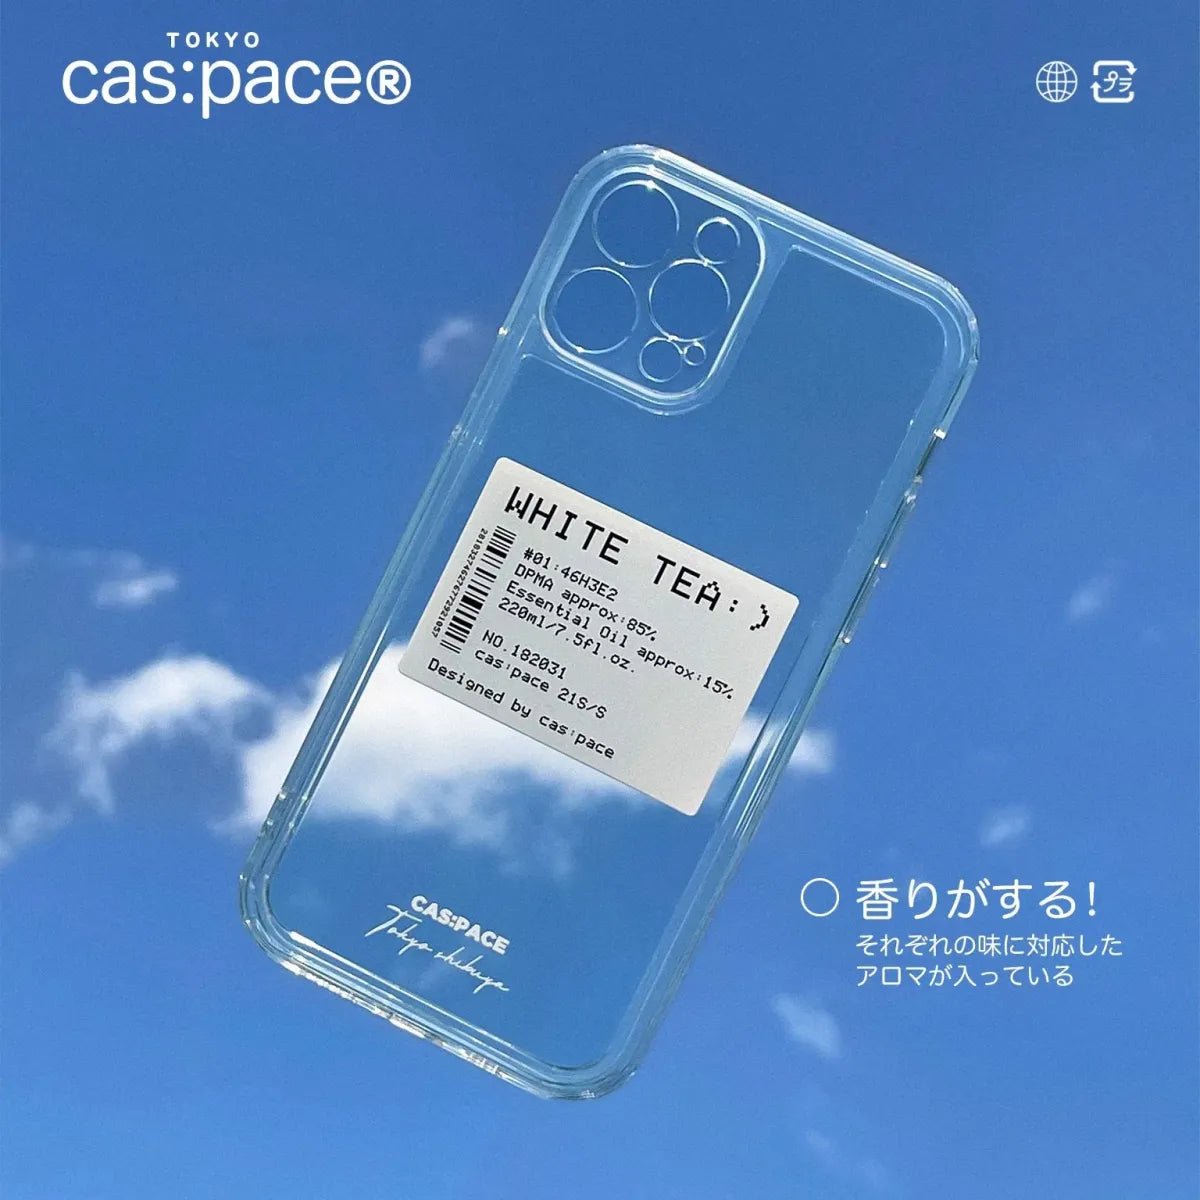 cas:pace 21S/S 「白茶」アロマラベル 携帯ケース - cas:pace 殼空間